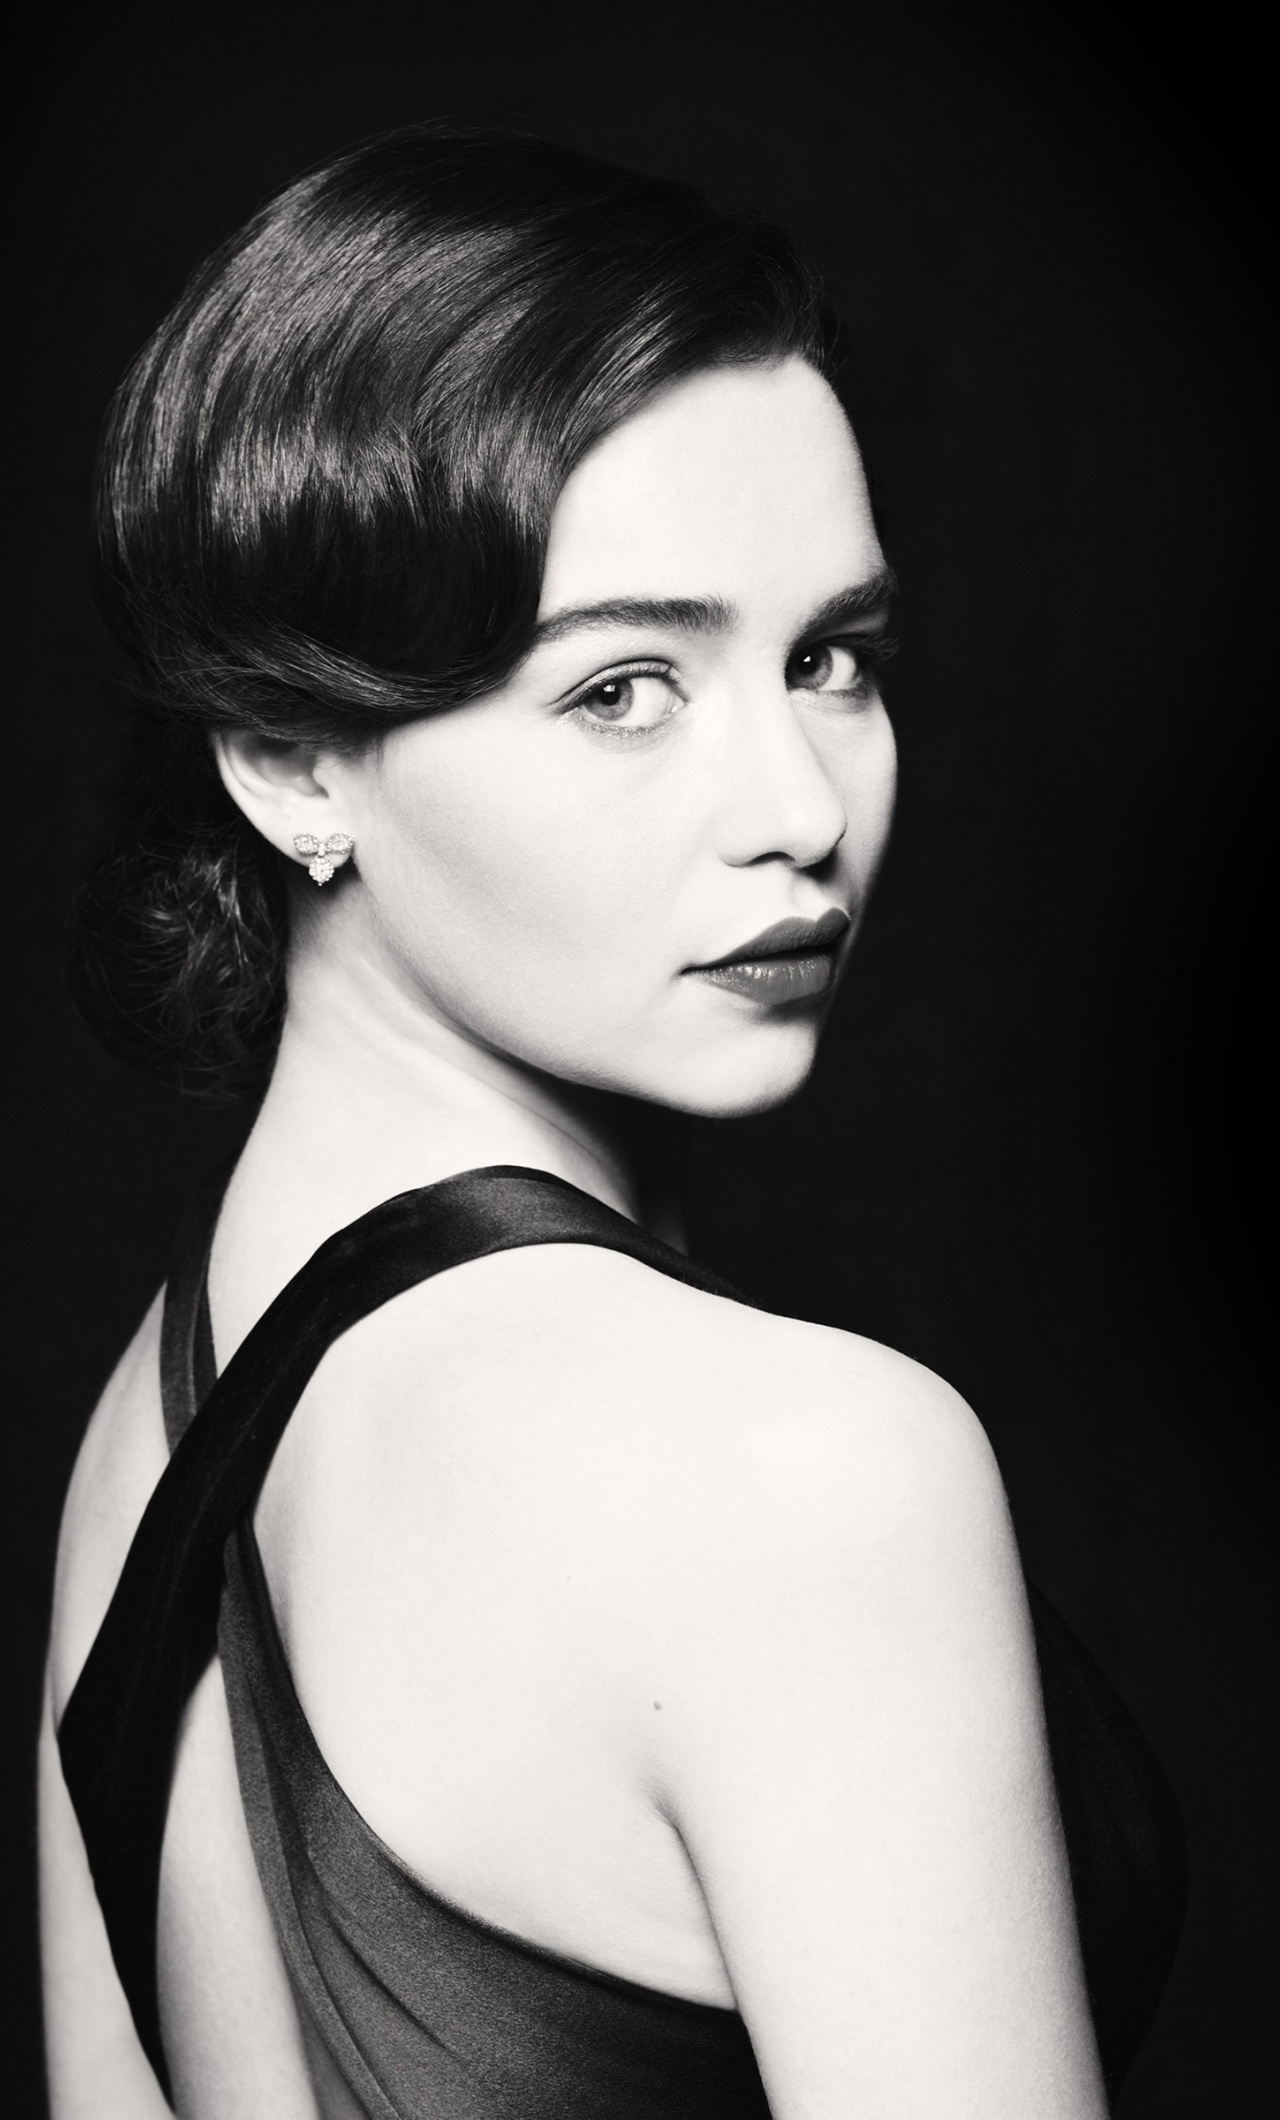 Emilia Clarke Monochrome In Black Dress Wallpapers